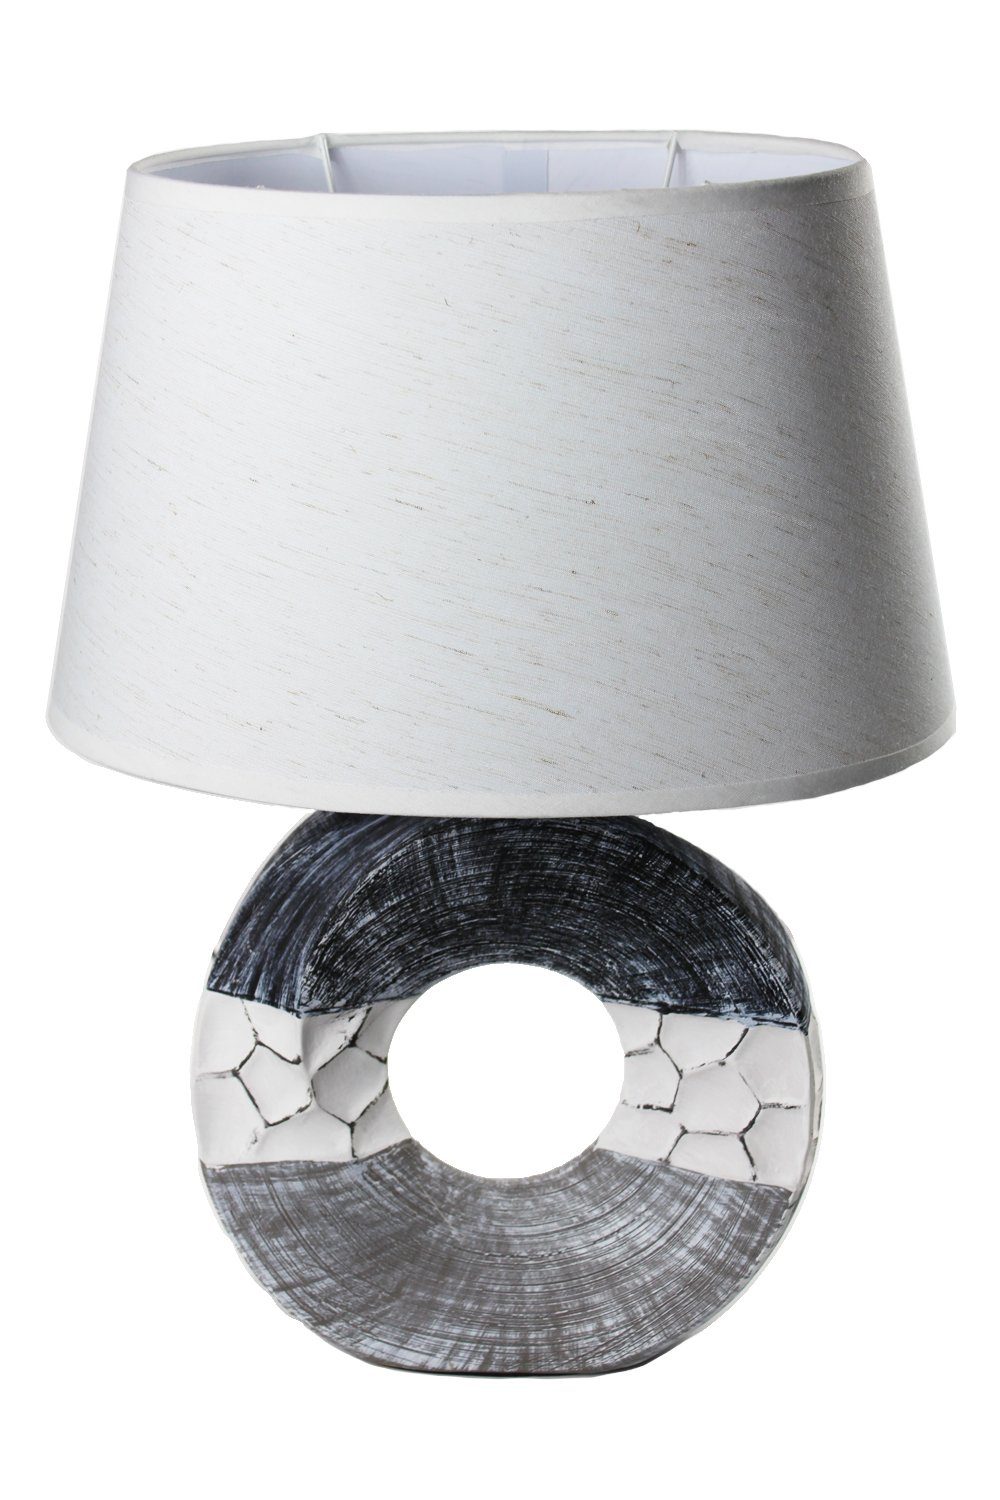 Keramik Nachttischlampe, Tischleuchte weißen Leuchtmittel, mit ovalen Ein-Aus Tischlampe Schalter, Arnusa ohne Maritim Schirm